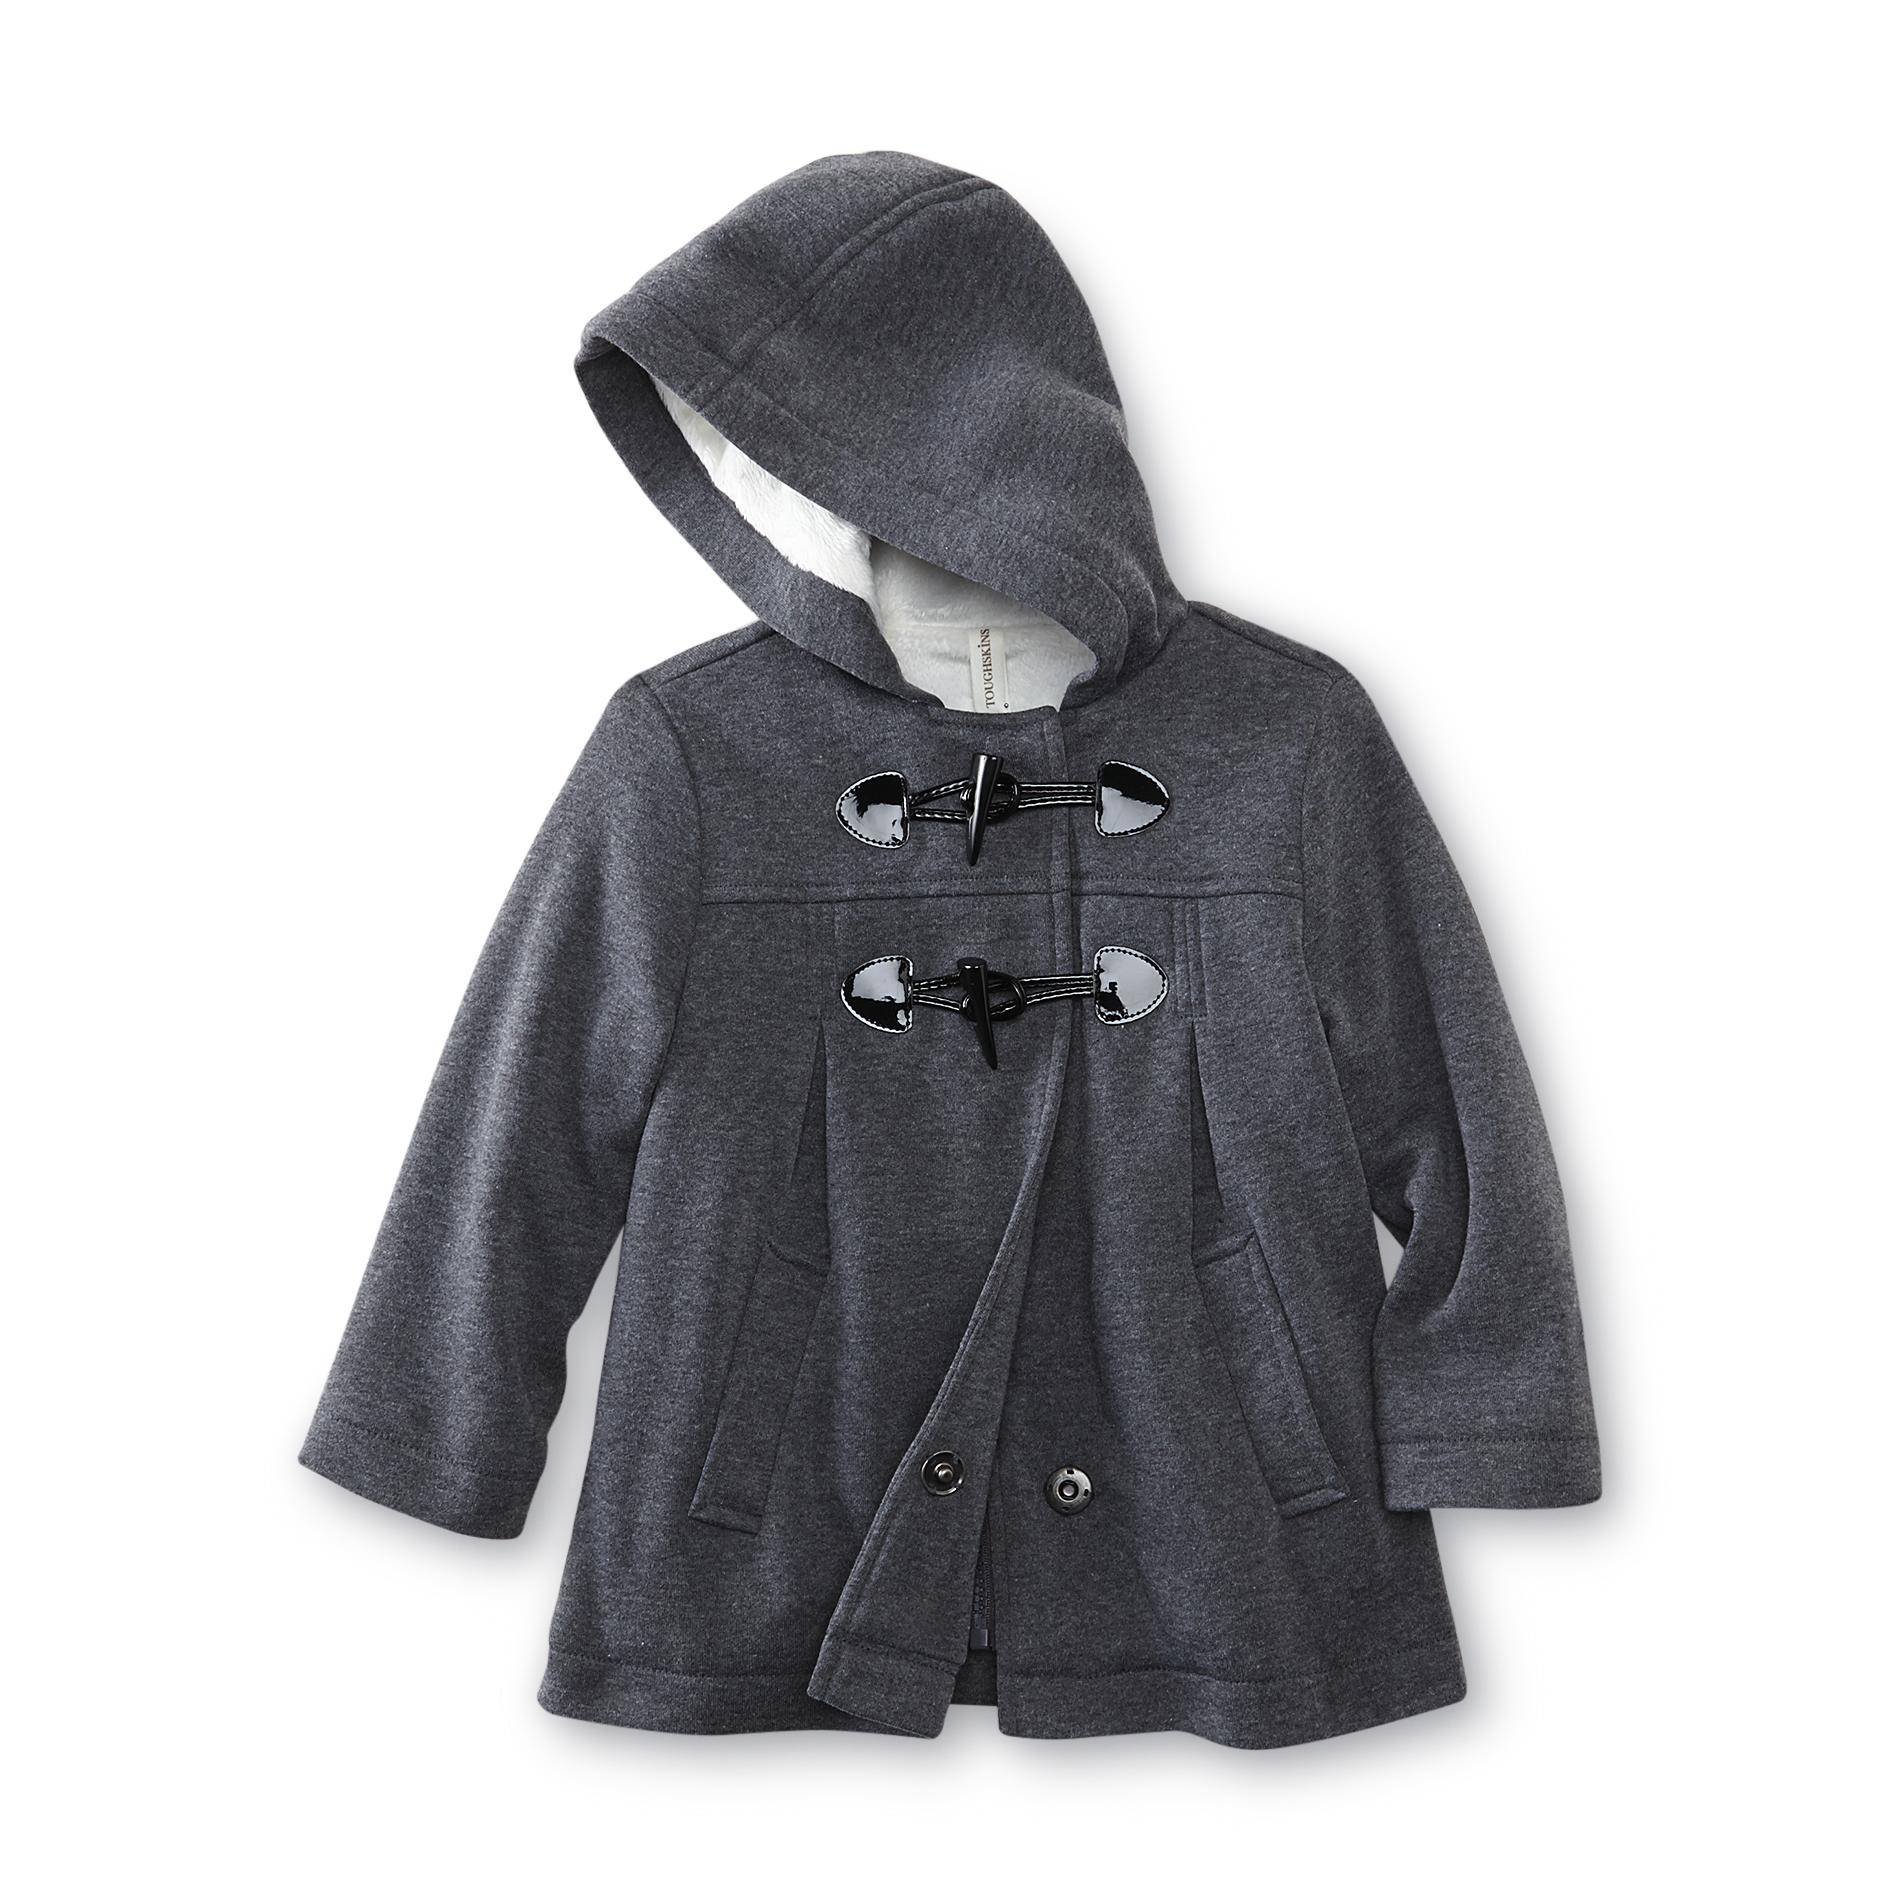 Toughskins Toddler Girl's Hooded Coat